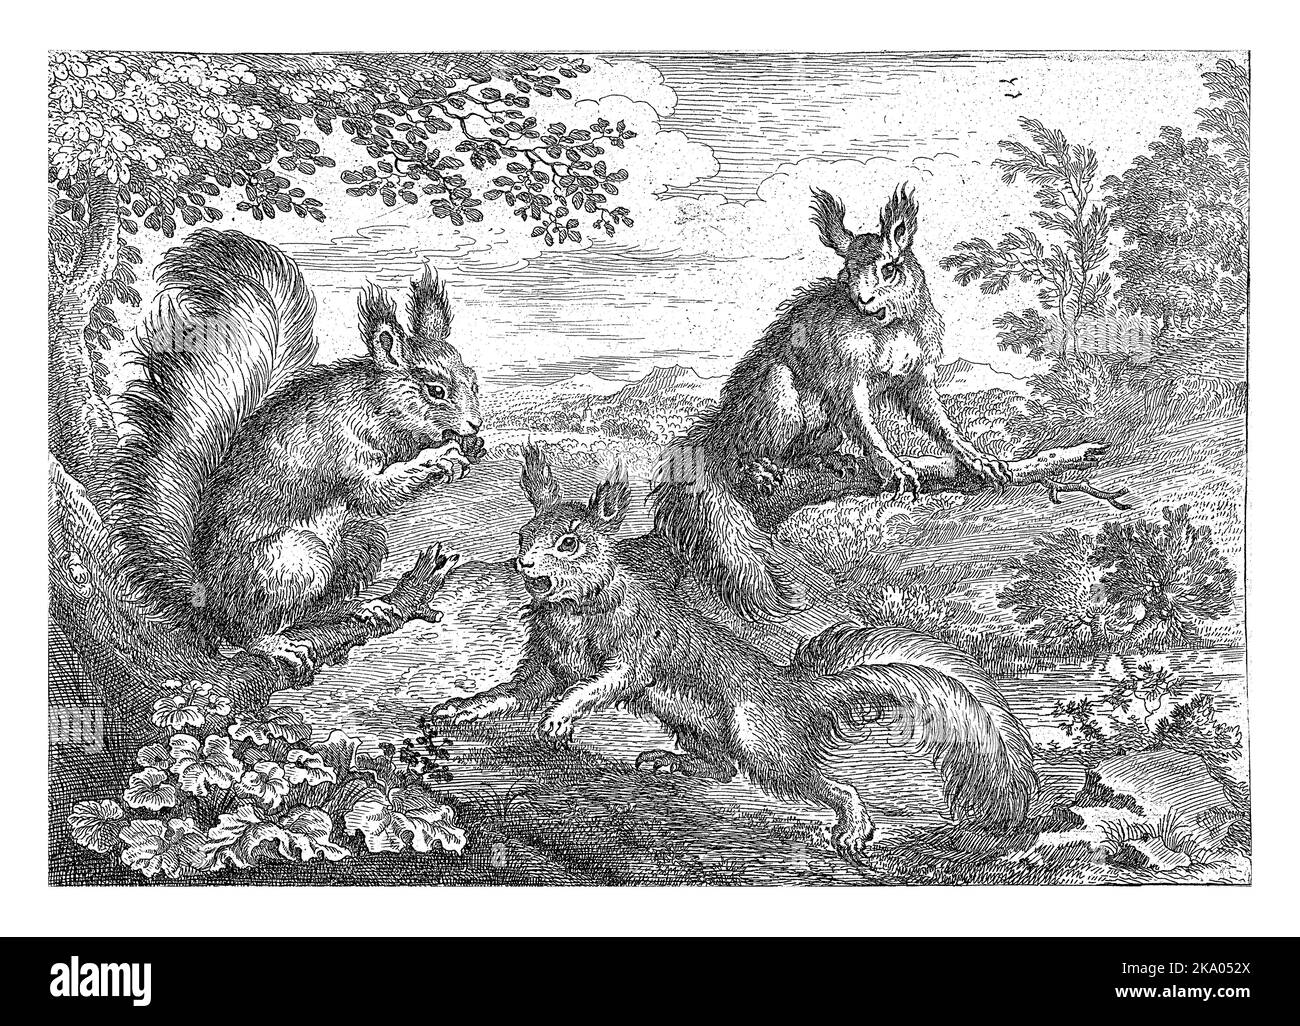 Tre scoiattoli in un paesaggio boscoso. Questa stampa fa parte di una serie di dieci stampe con diversi animali. Foto Stock